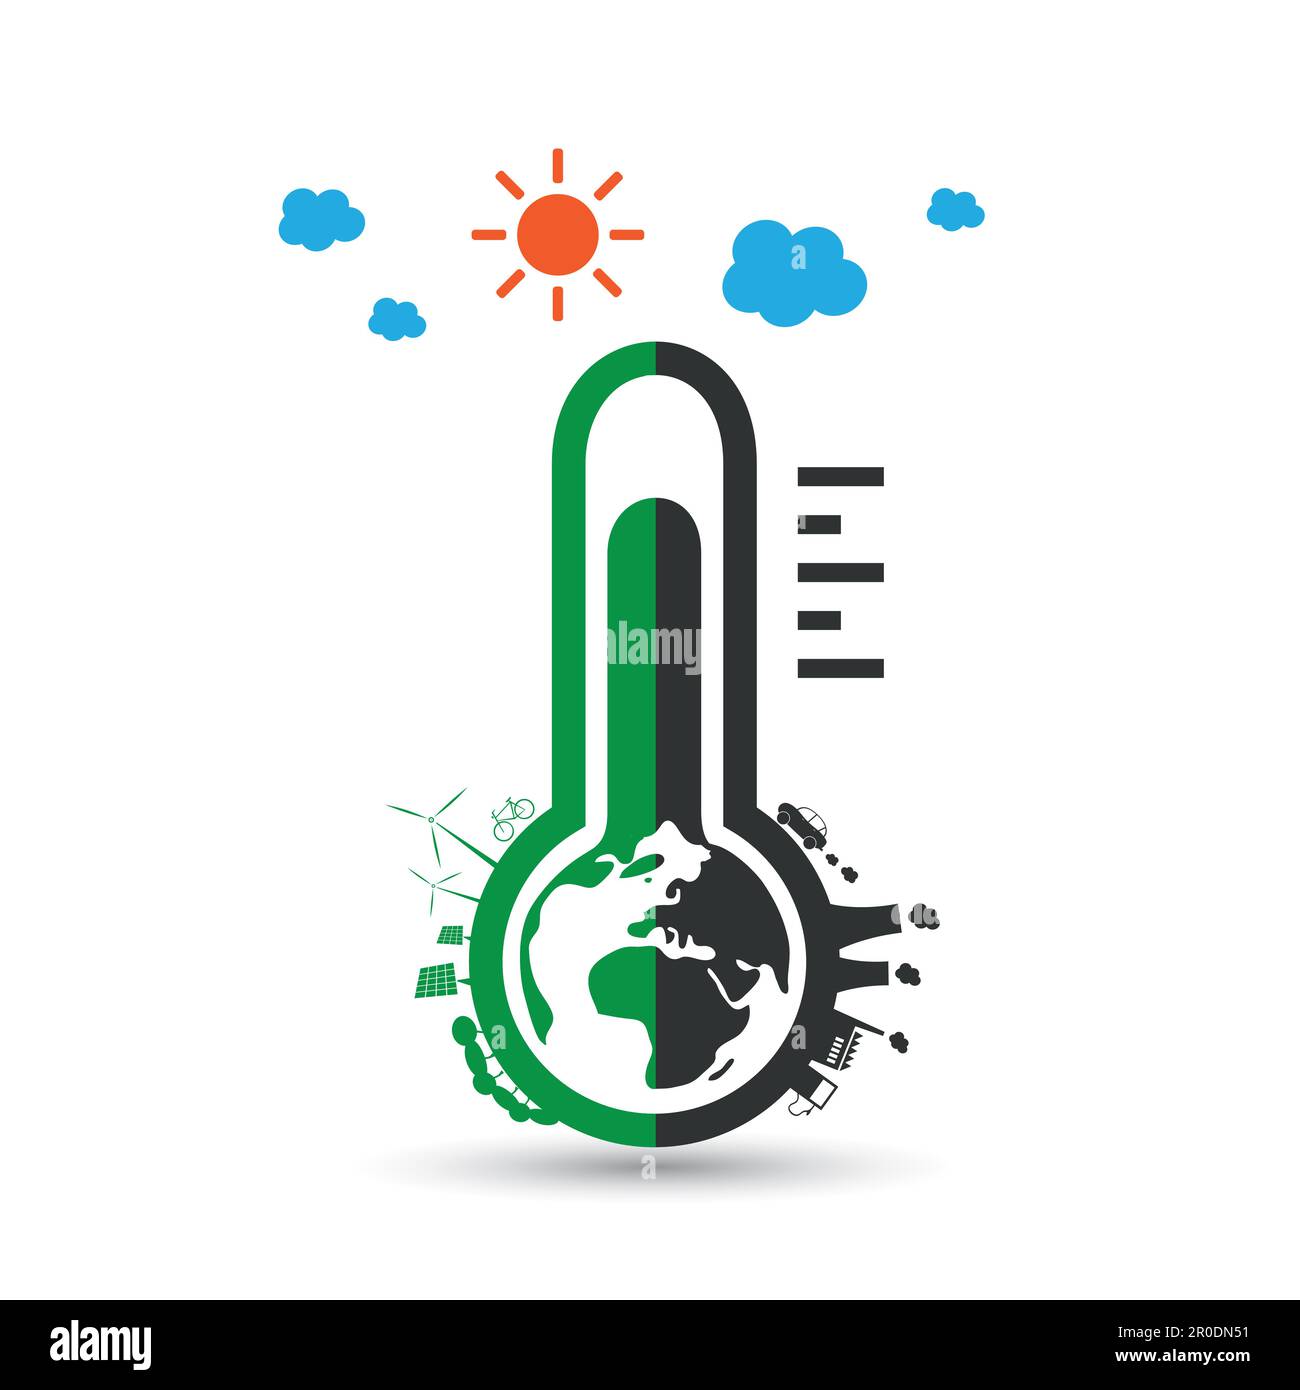 Globale Erwärmung, ökologische Probleme und Lösungen – Designkonzept für Thermometersymbole Stock Vektor